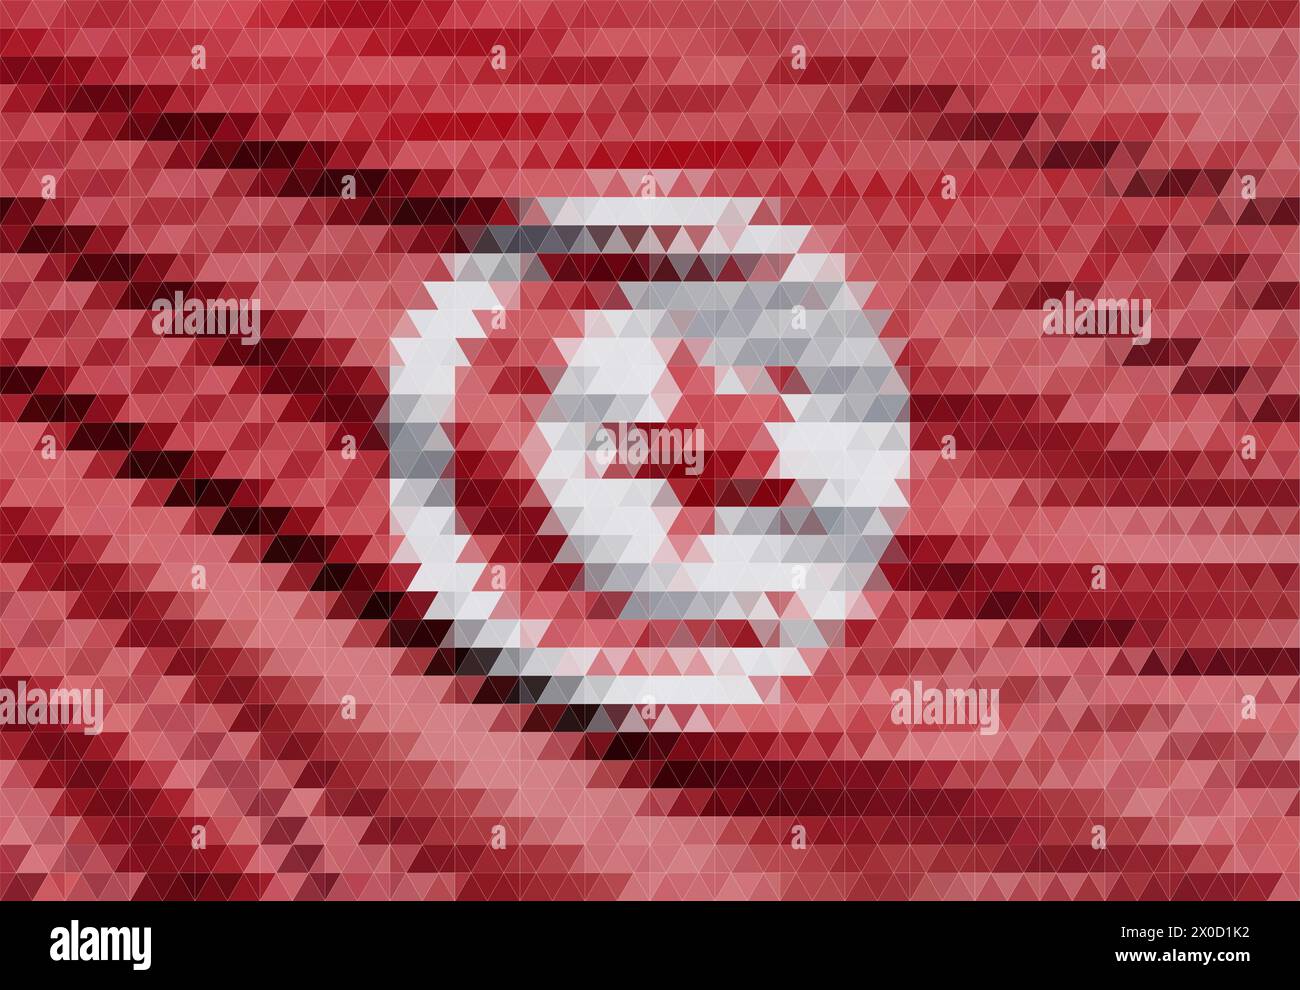 Tunesische Flagge. Isolierte Nationalflagge Tunesiens. Schwenkende Flagge der Republik Tunesien. Flatternde Textilflagge in tunesien. Stock Vektor